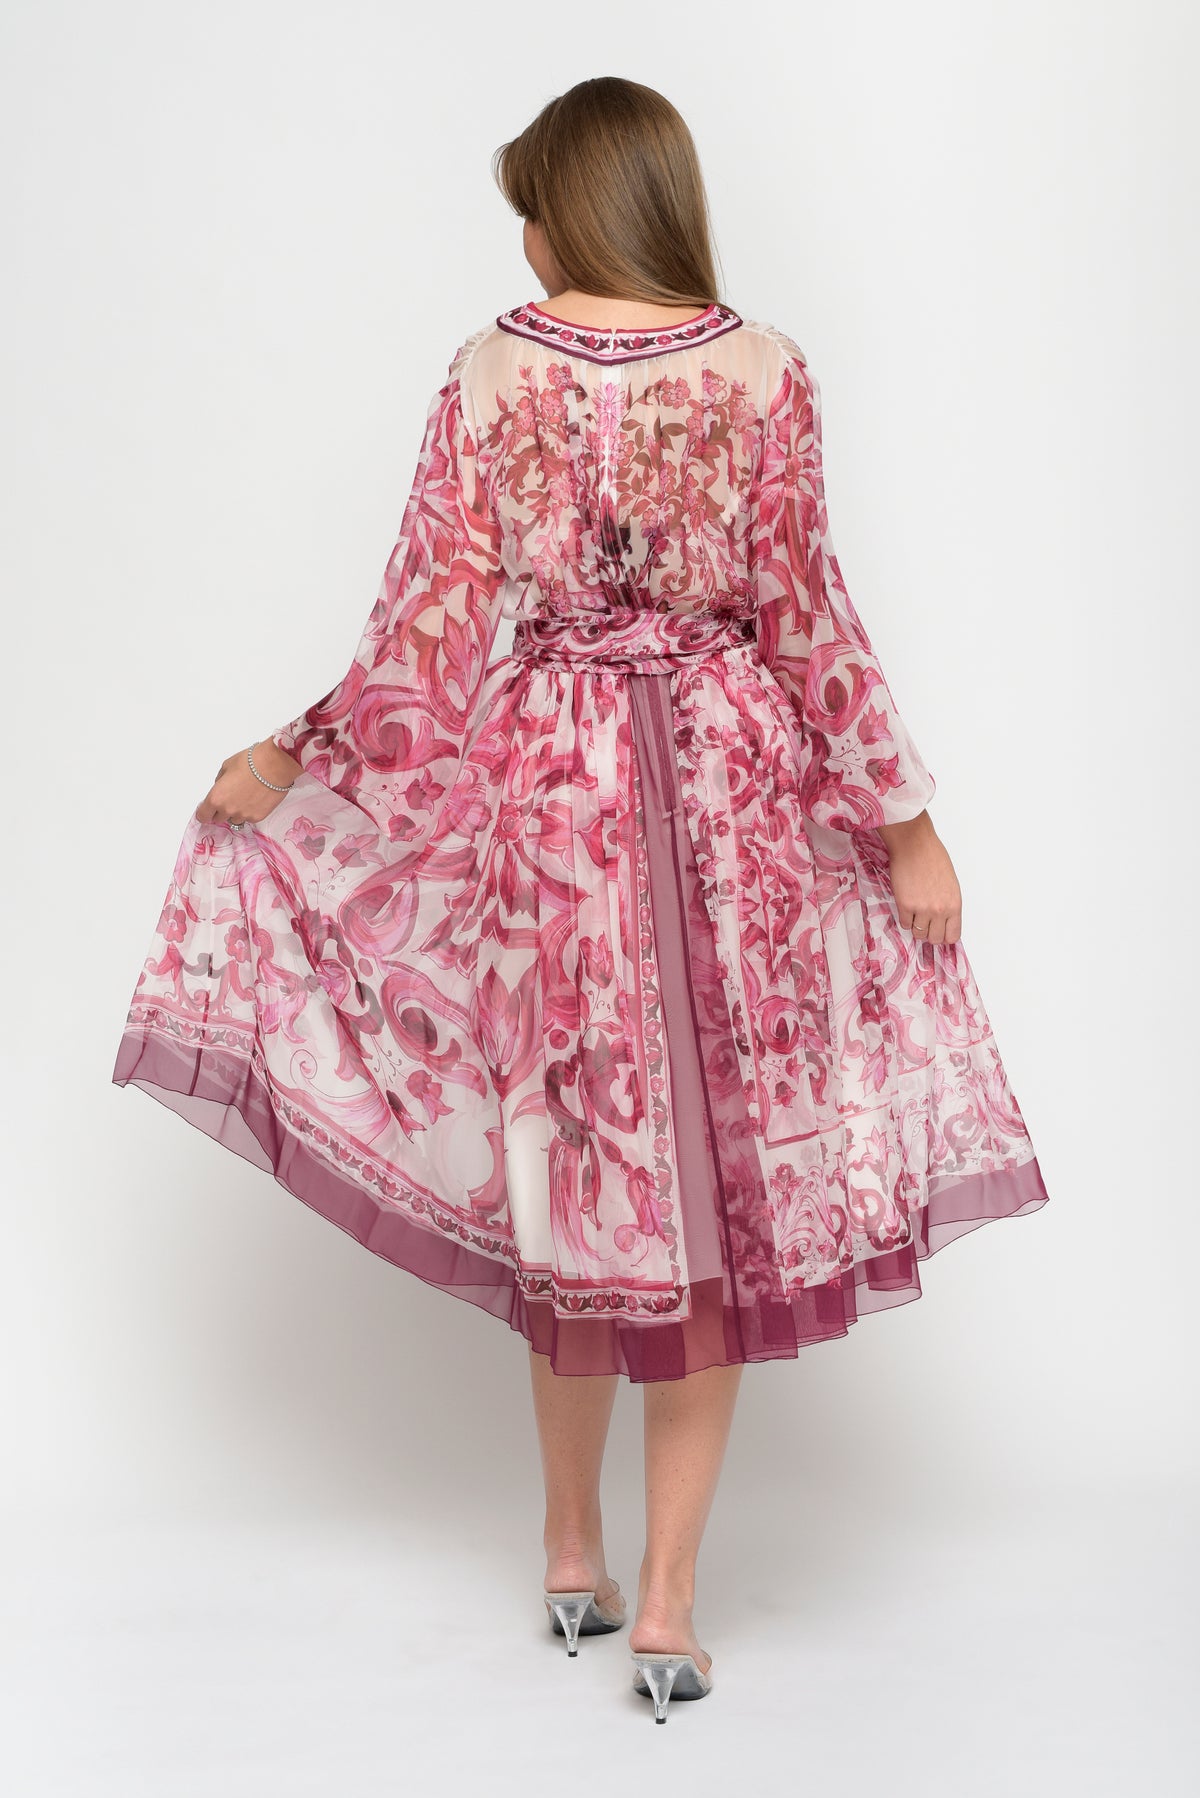 Dolce &amp; Gabbana Maioliche Print V-Neck Dress